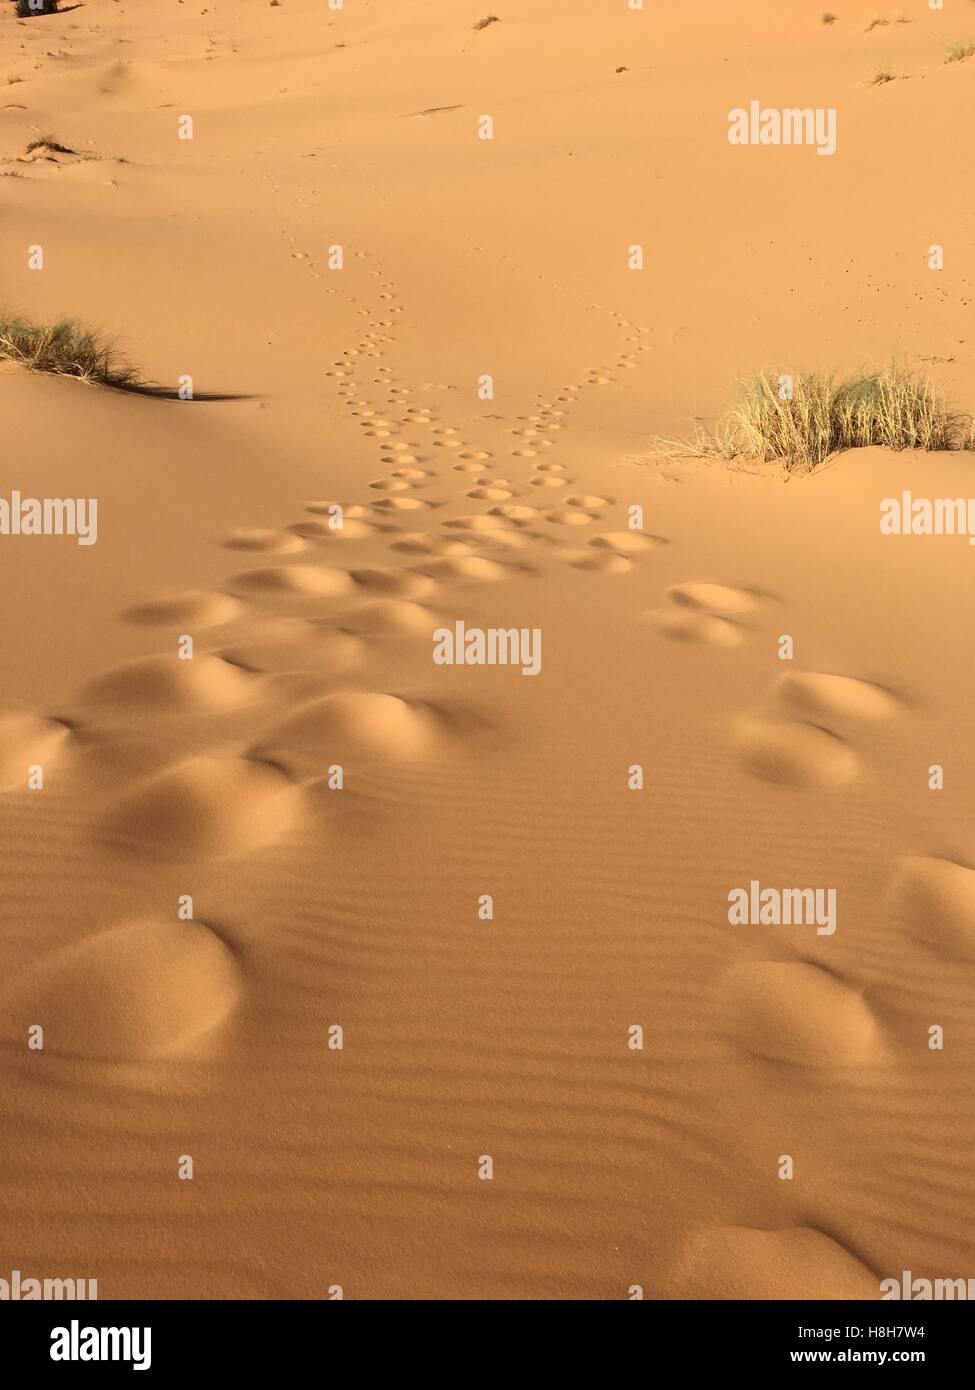 Vacío ilimitado panorama del desierto del norte de África Bechar Argelia, arena del desierto Taghit Foto de stock